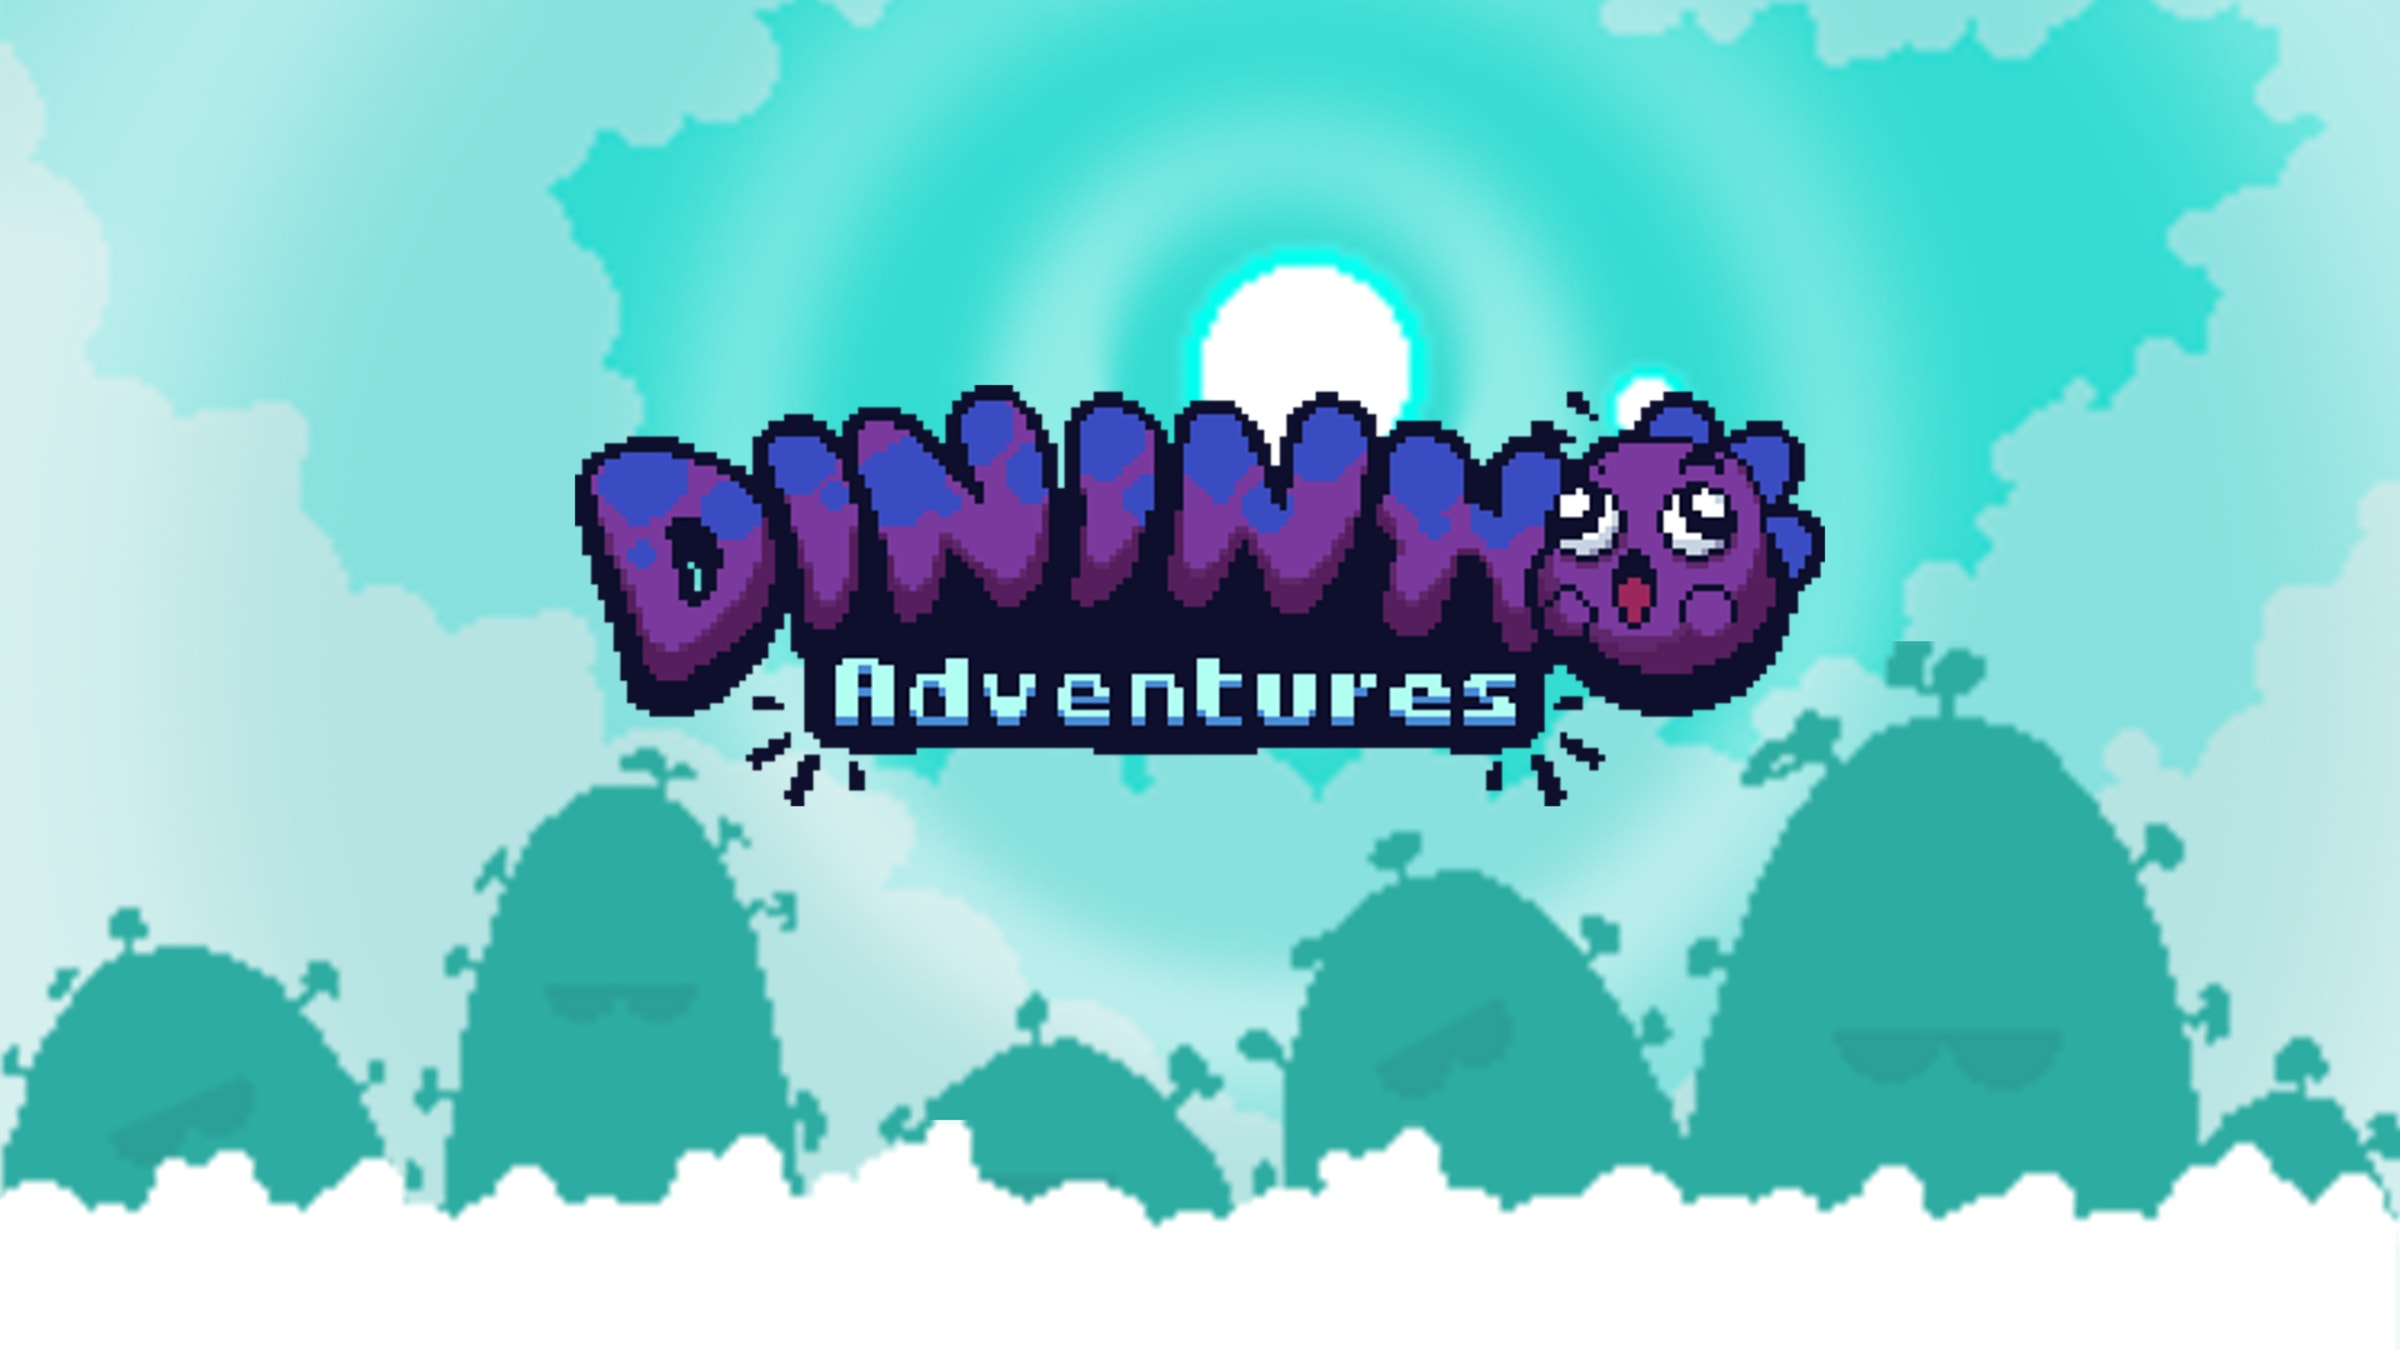 Dininho Adventures for Nintendo Switch - Nintendo Official Site